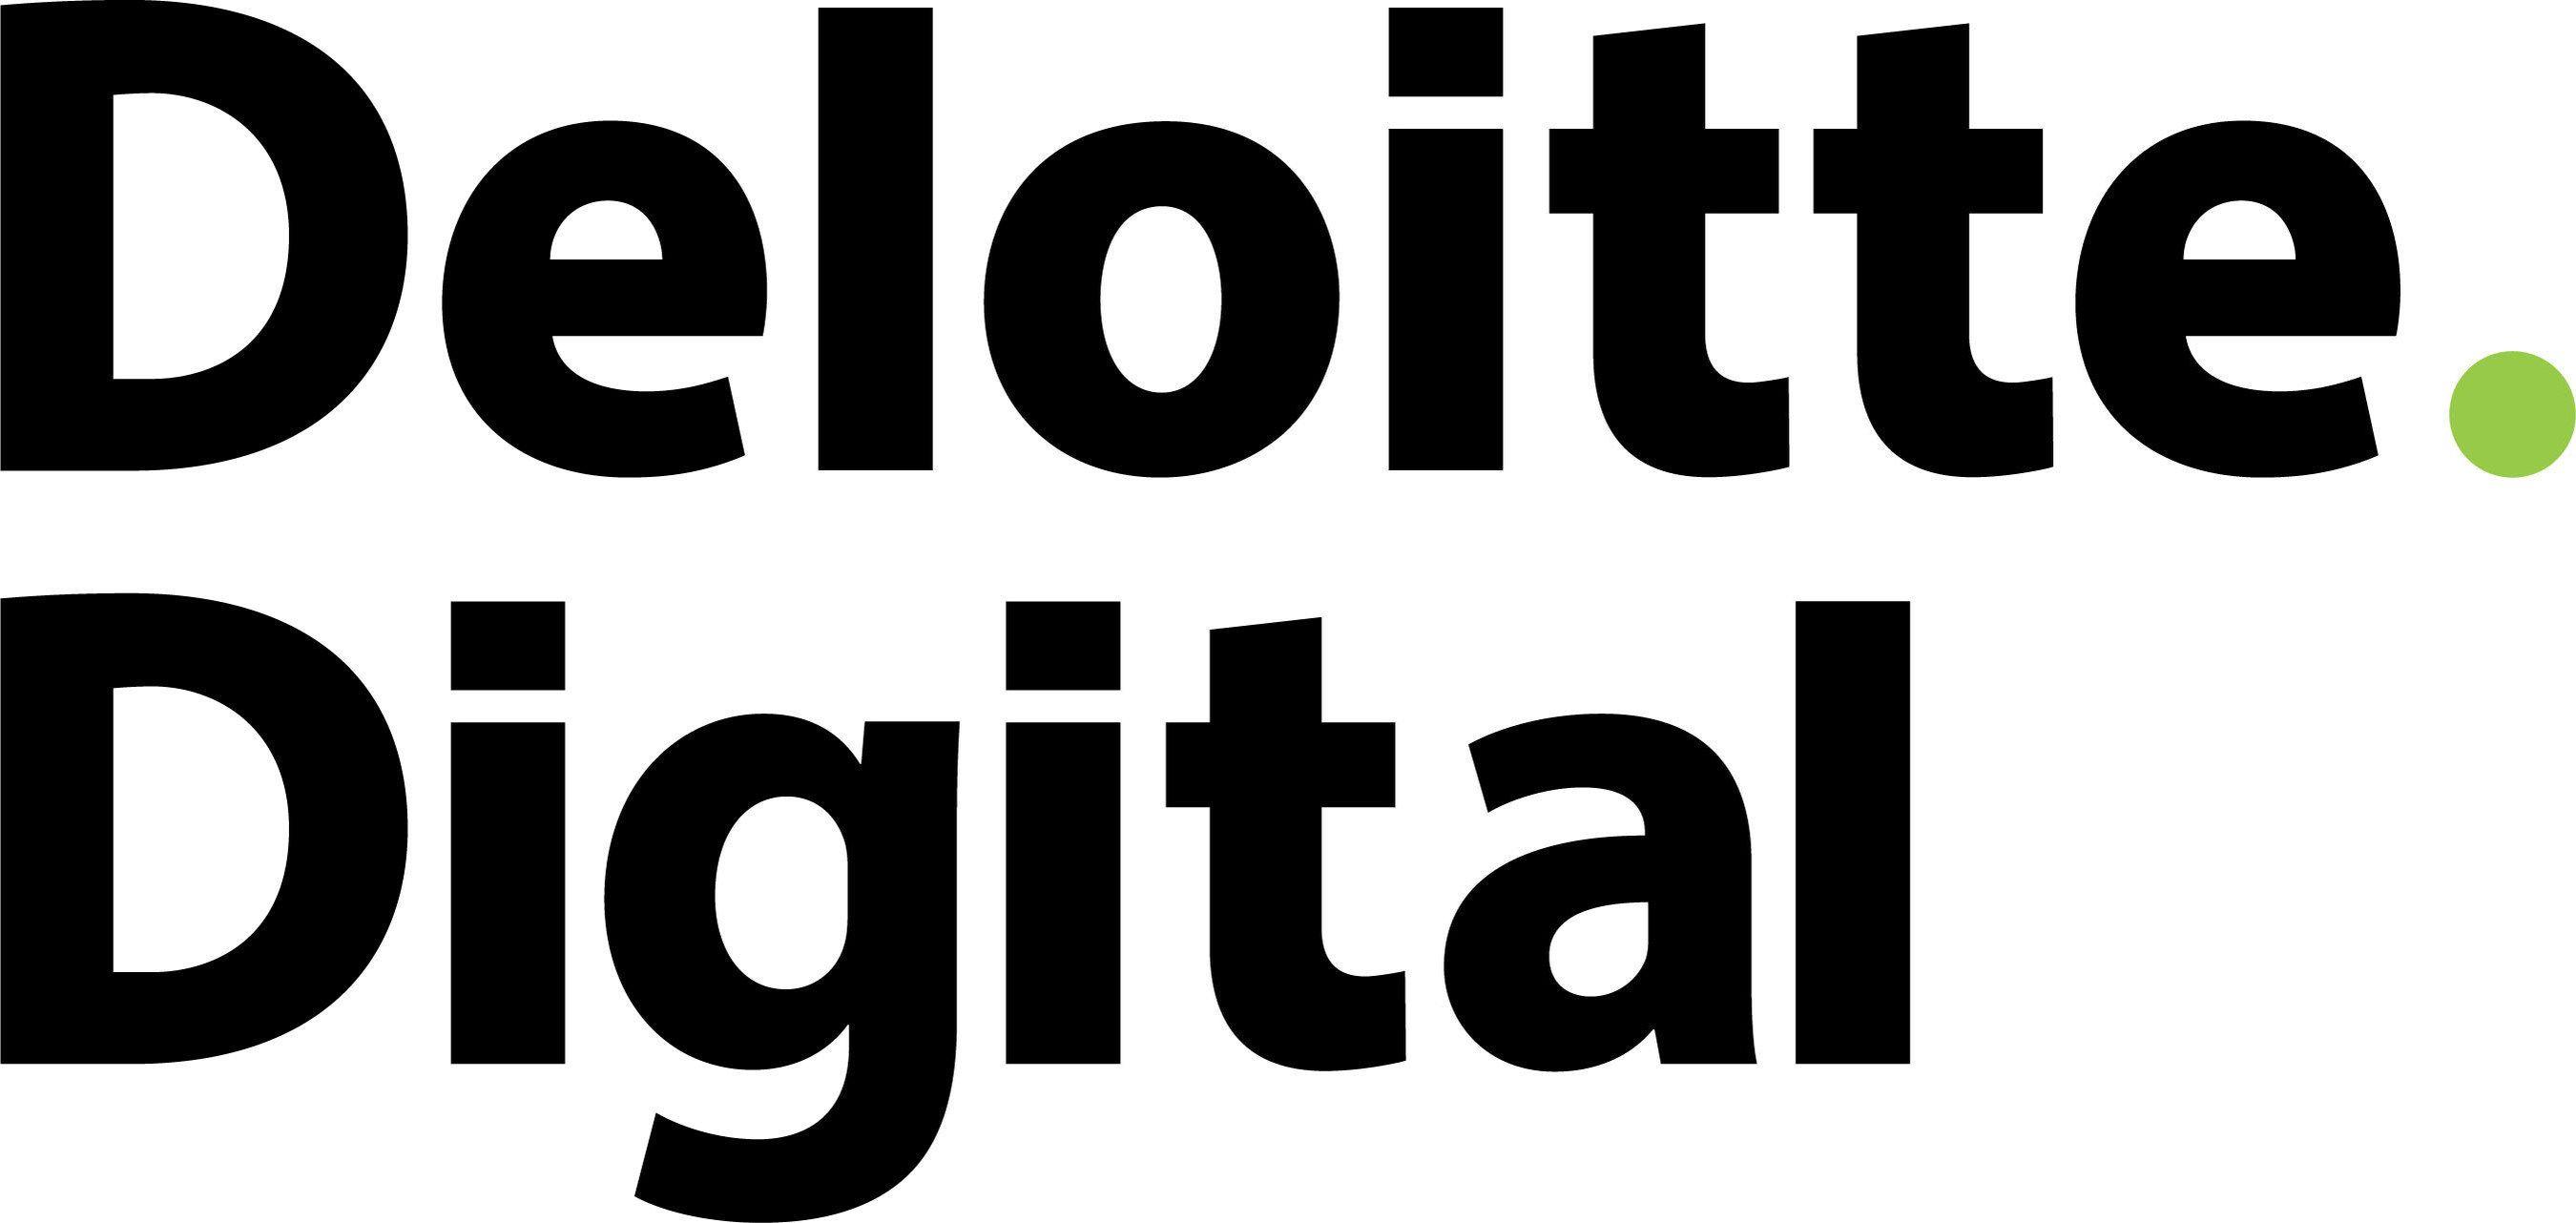 Deloitte Digital Logo - Deloitte Digital Announces 'businessCONNECT' for Government Services